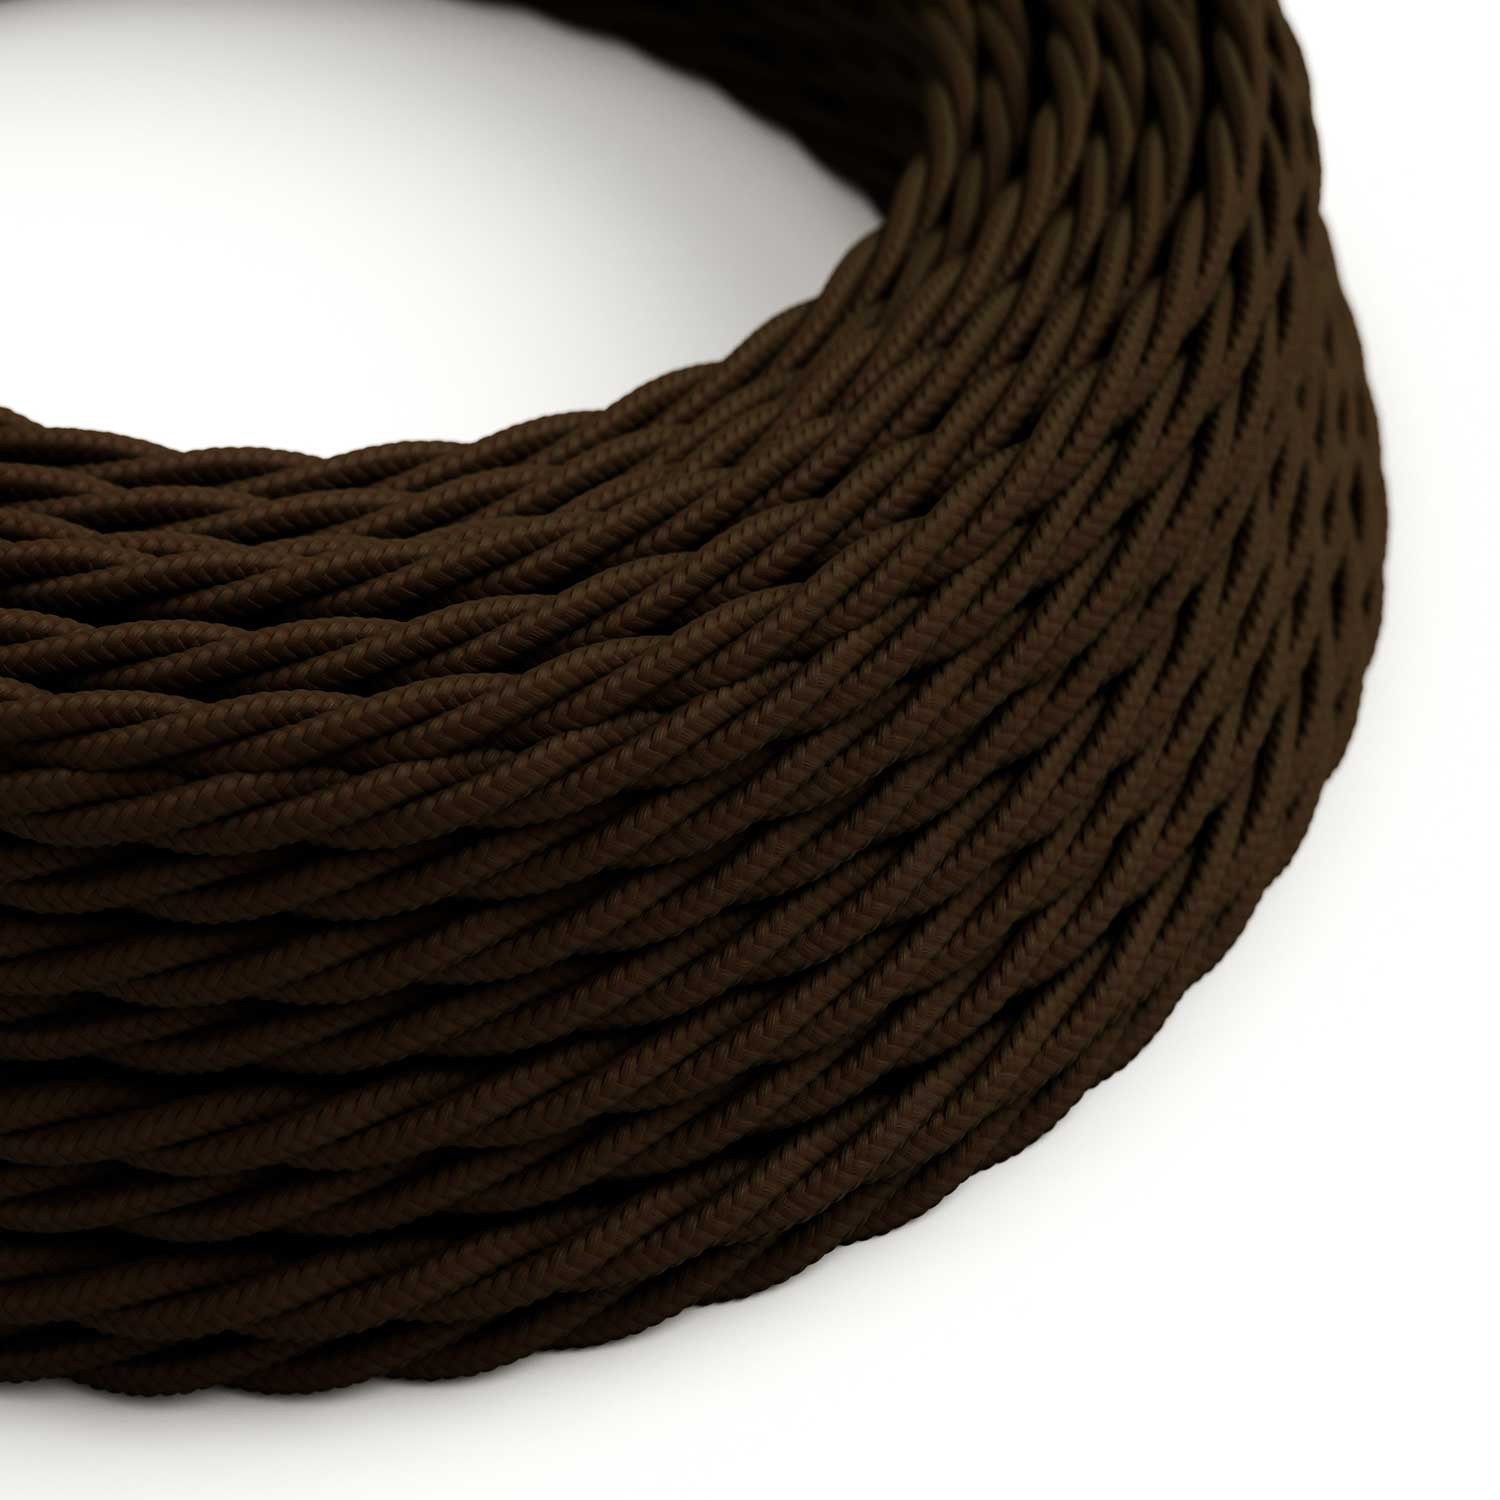 Stočený textilný elektrický kábel, umelý hodváb, jednofarebný, TM13 Hnedá